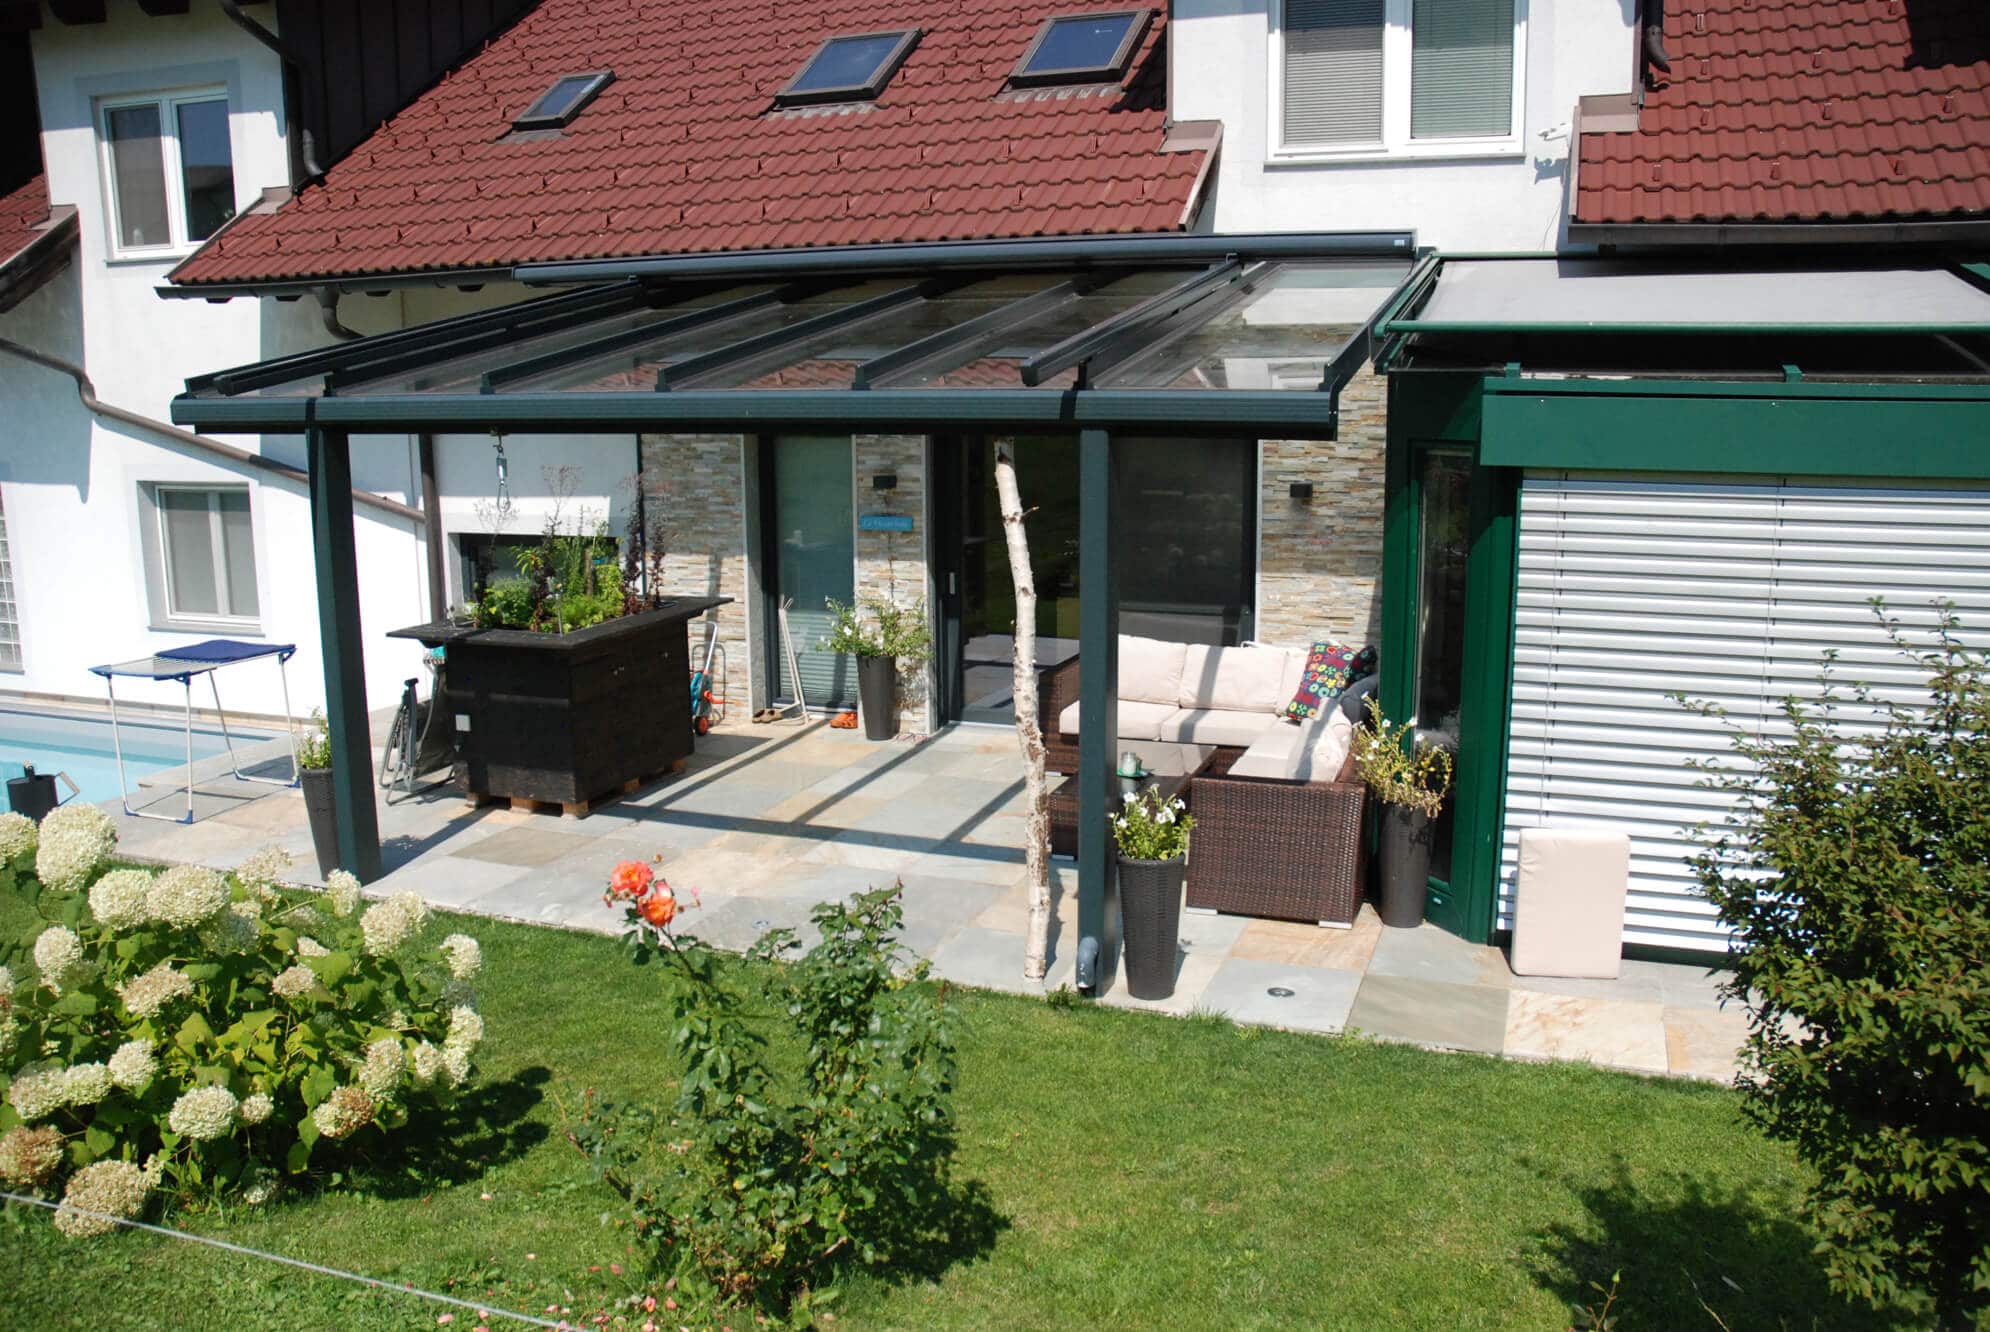 Terrassenüberdachung Alu in anthrazit und Glas in Oberösterreich montiert